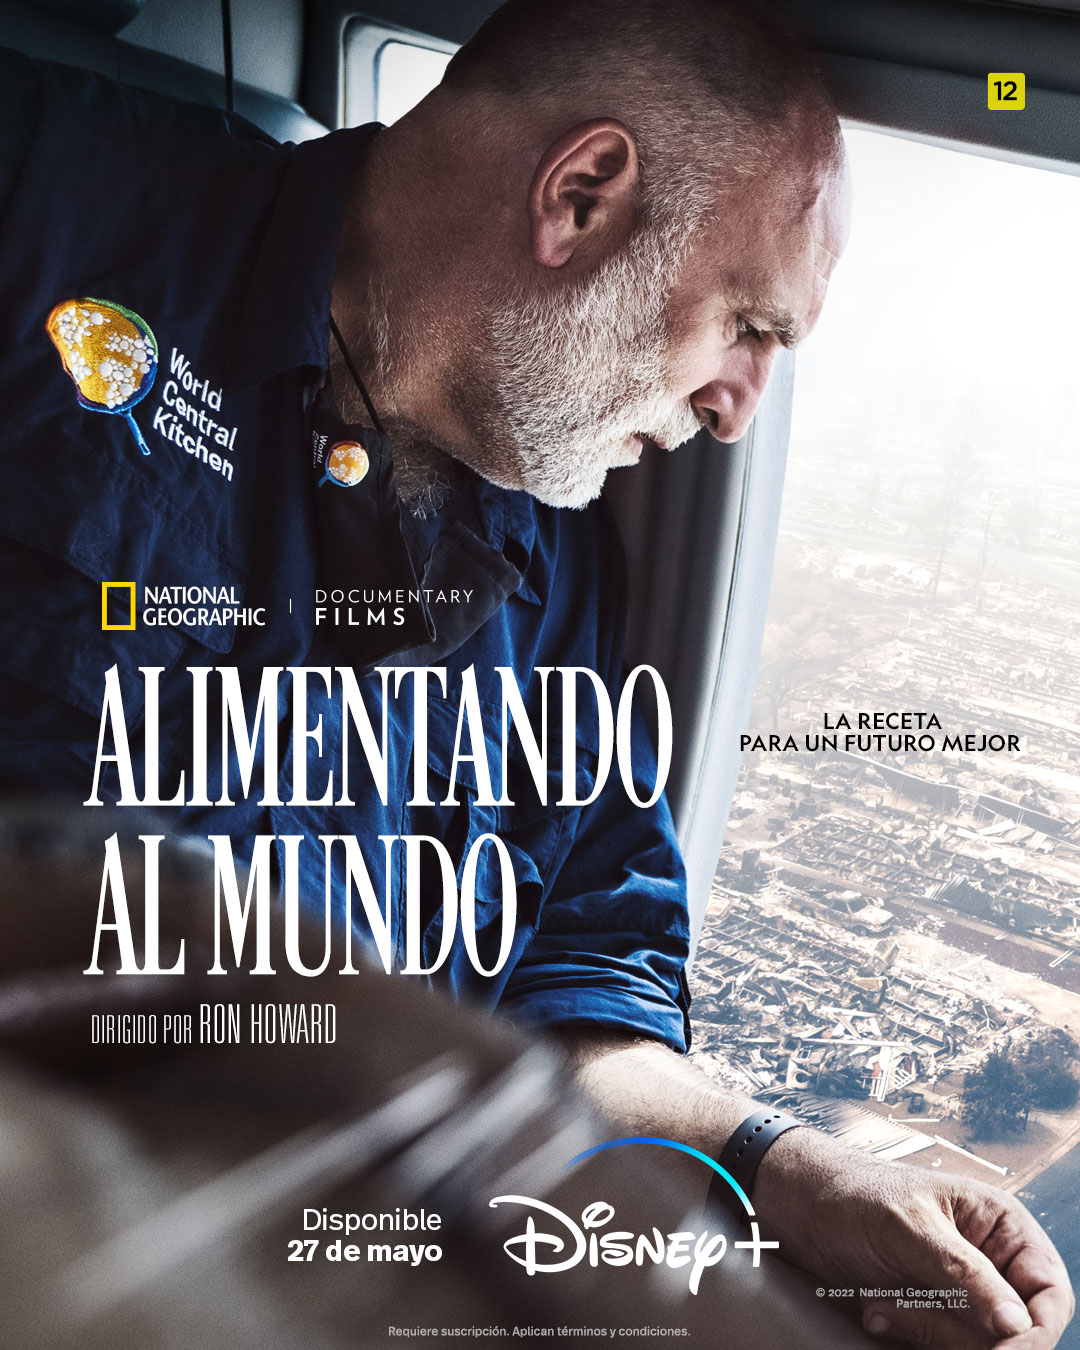 Ya está disponible el documental ‘Alimentando al mundo’ sobre el chef español José Andrés y su ONG World Central Kitchen